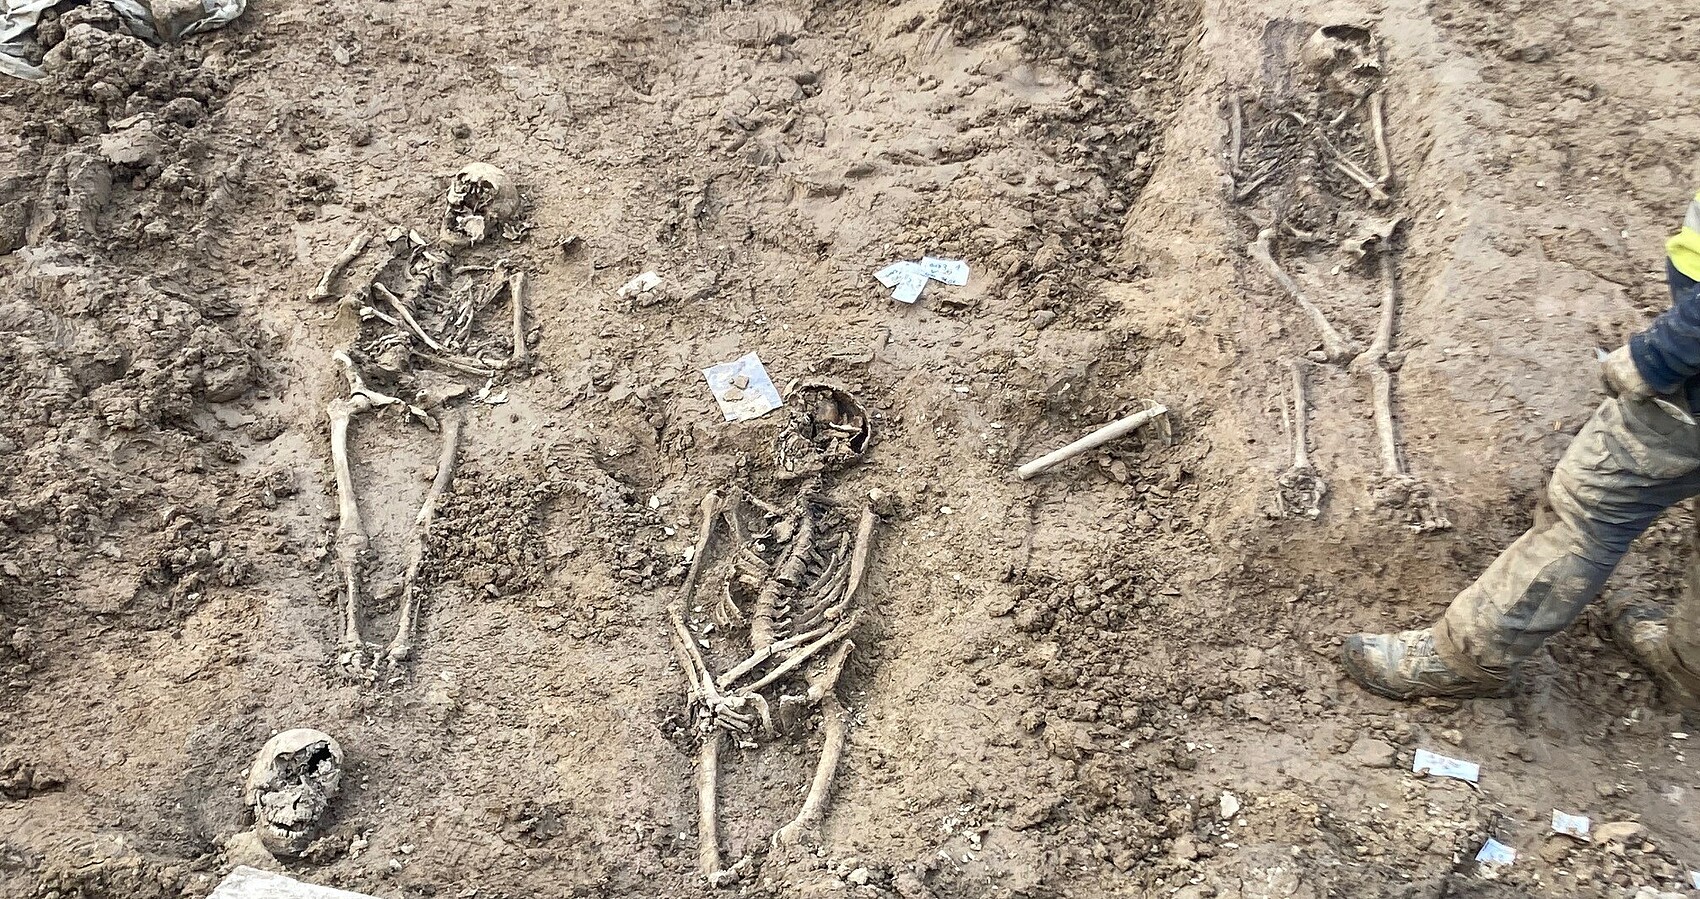 Bild zeigt 3 Skelette auf der Erde liegend, die beim Ausgraben gefunden wurden